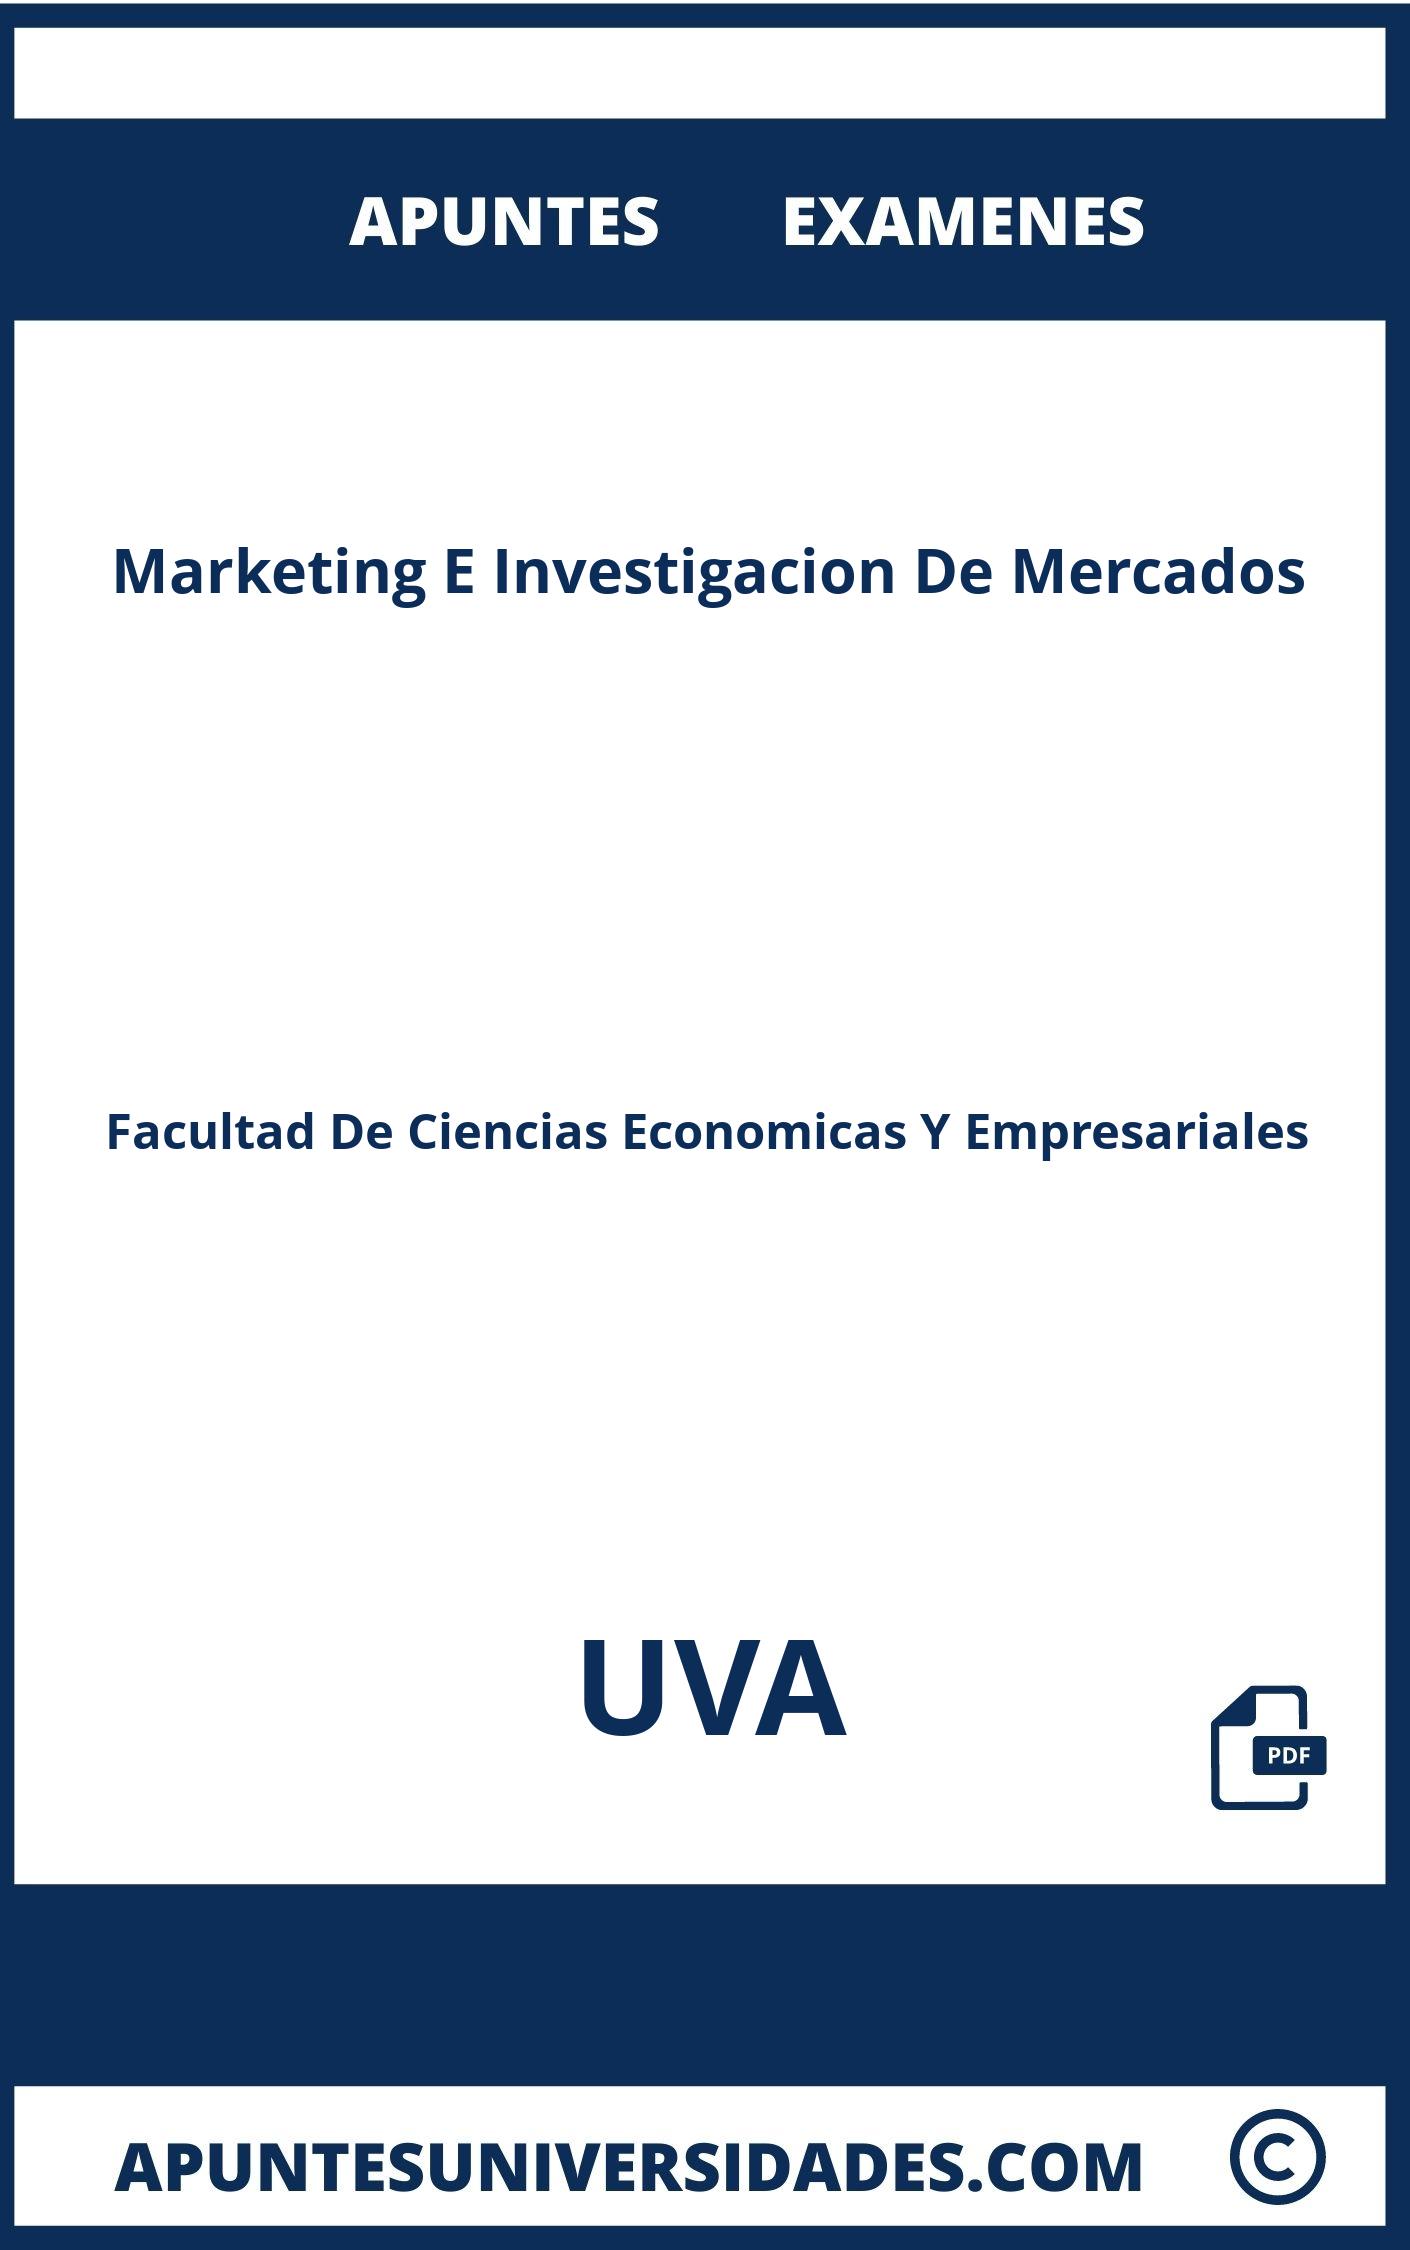 Examenes y Apuntes Marketing E Investigacion De Mercados UVA